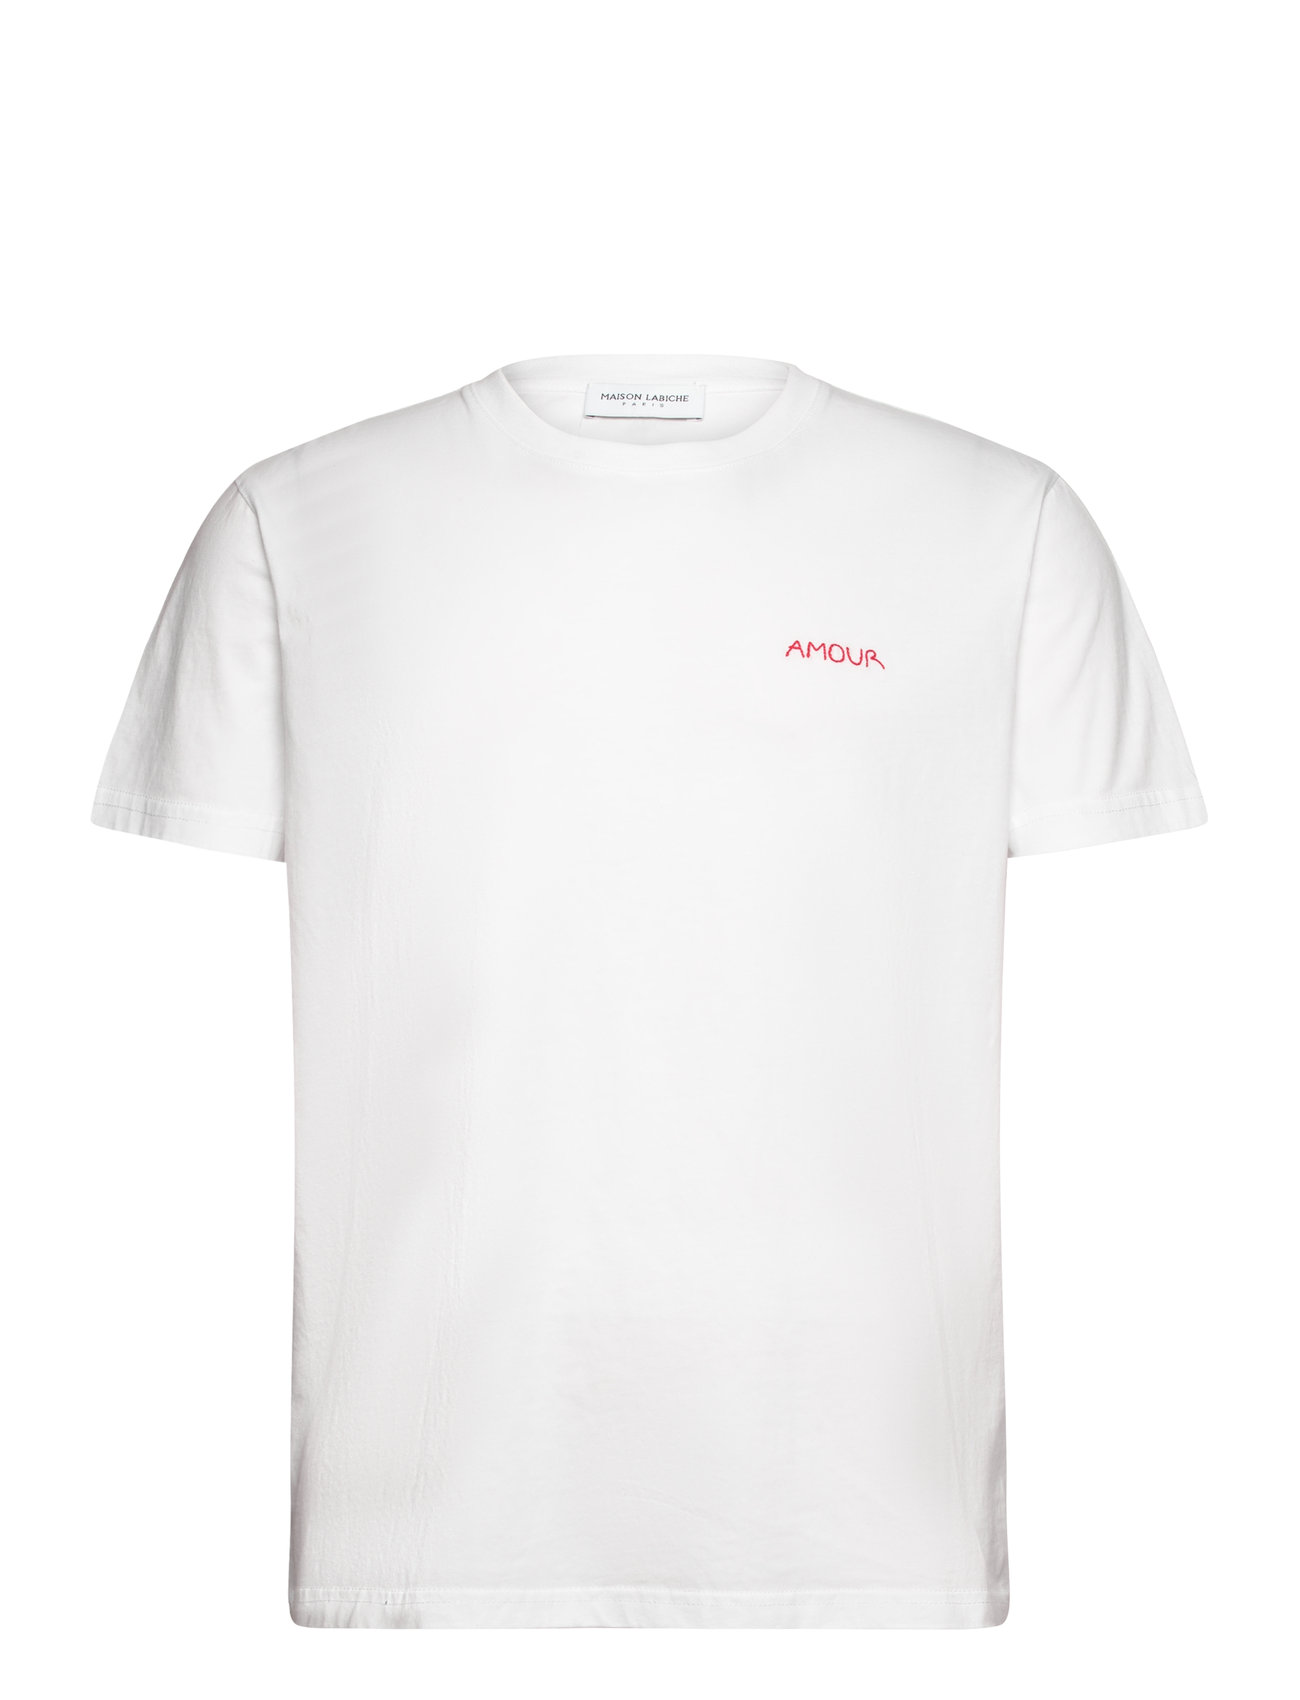 Popincourt Amour /Gots Designers T-shirts Short-sleeved White Maison Labiche Paris